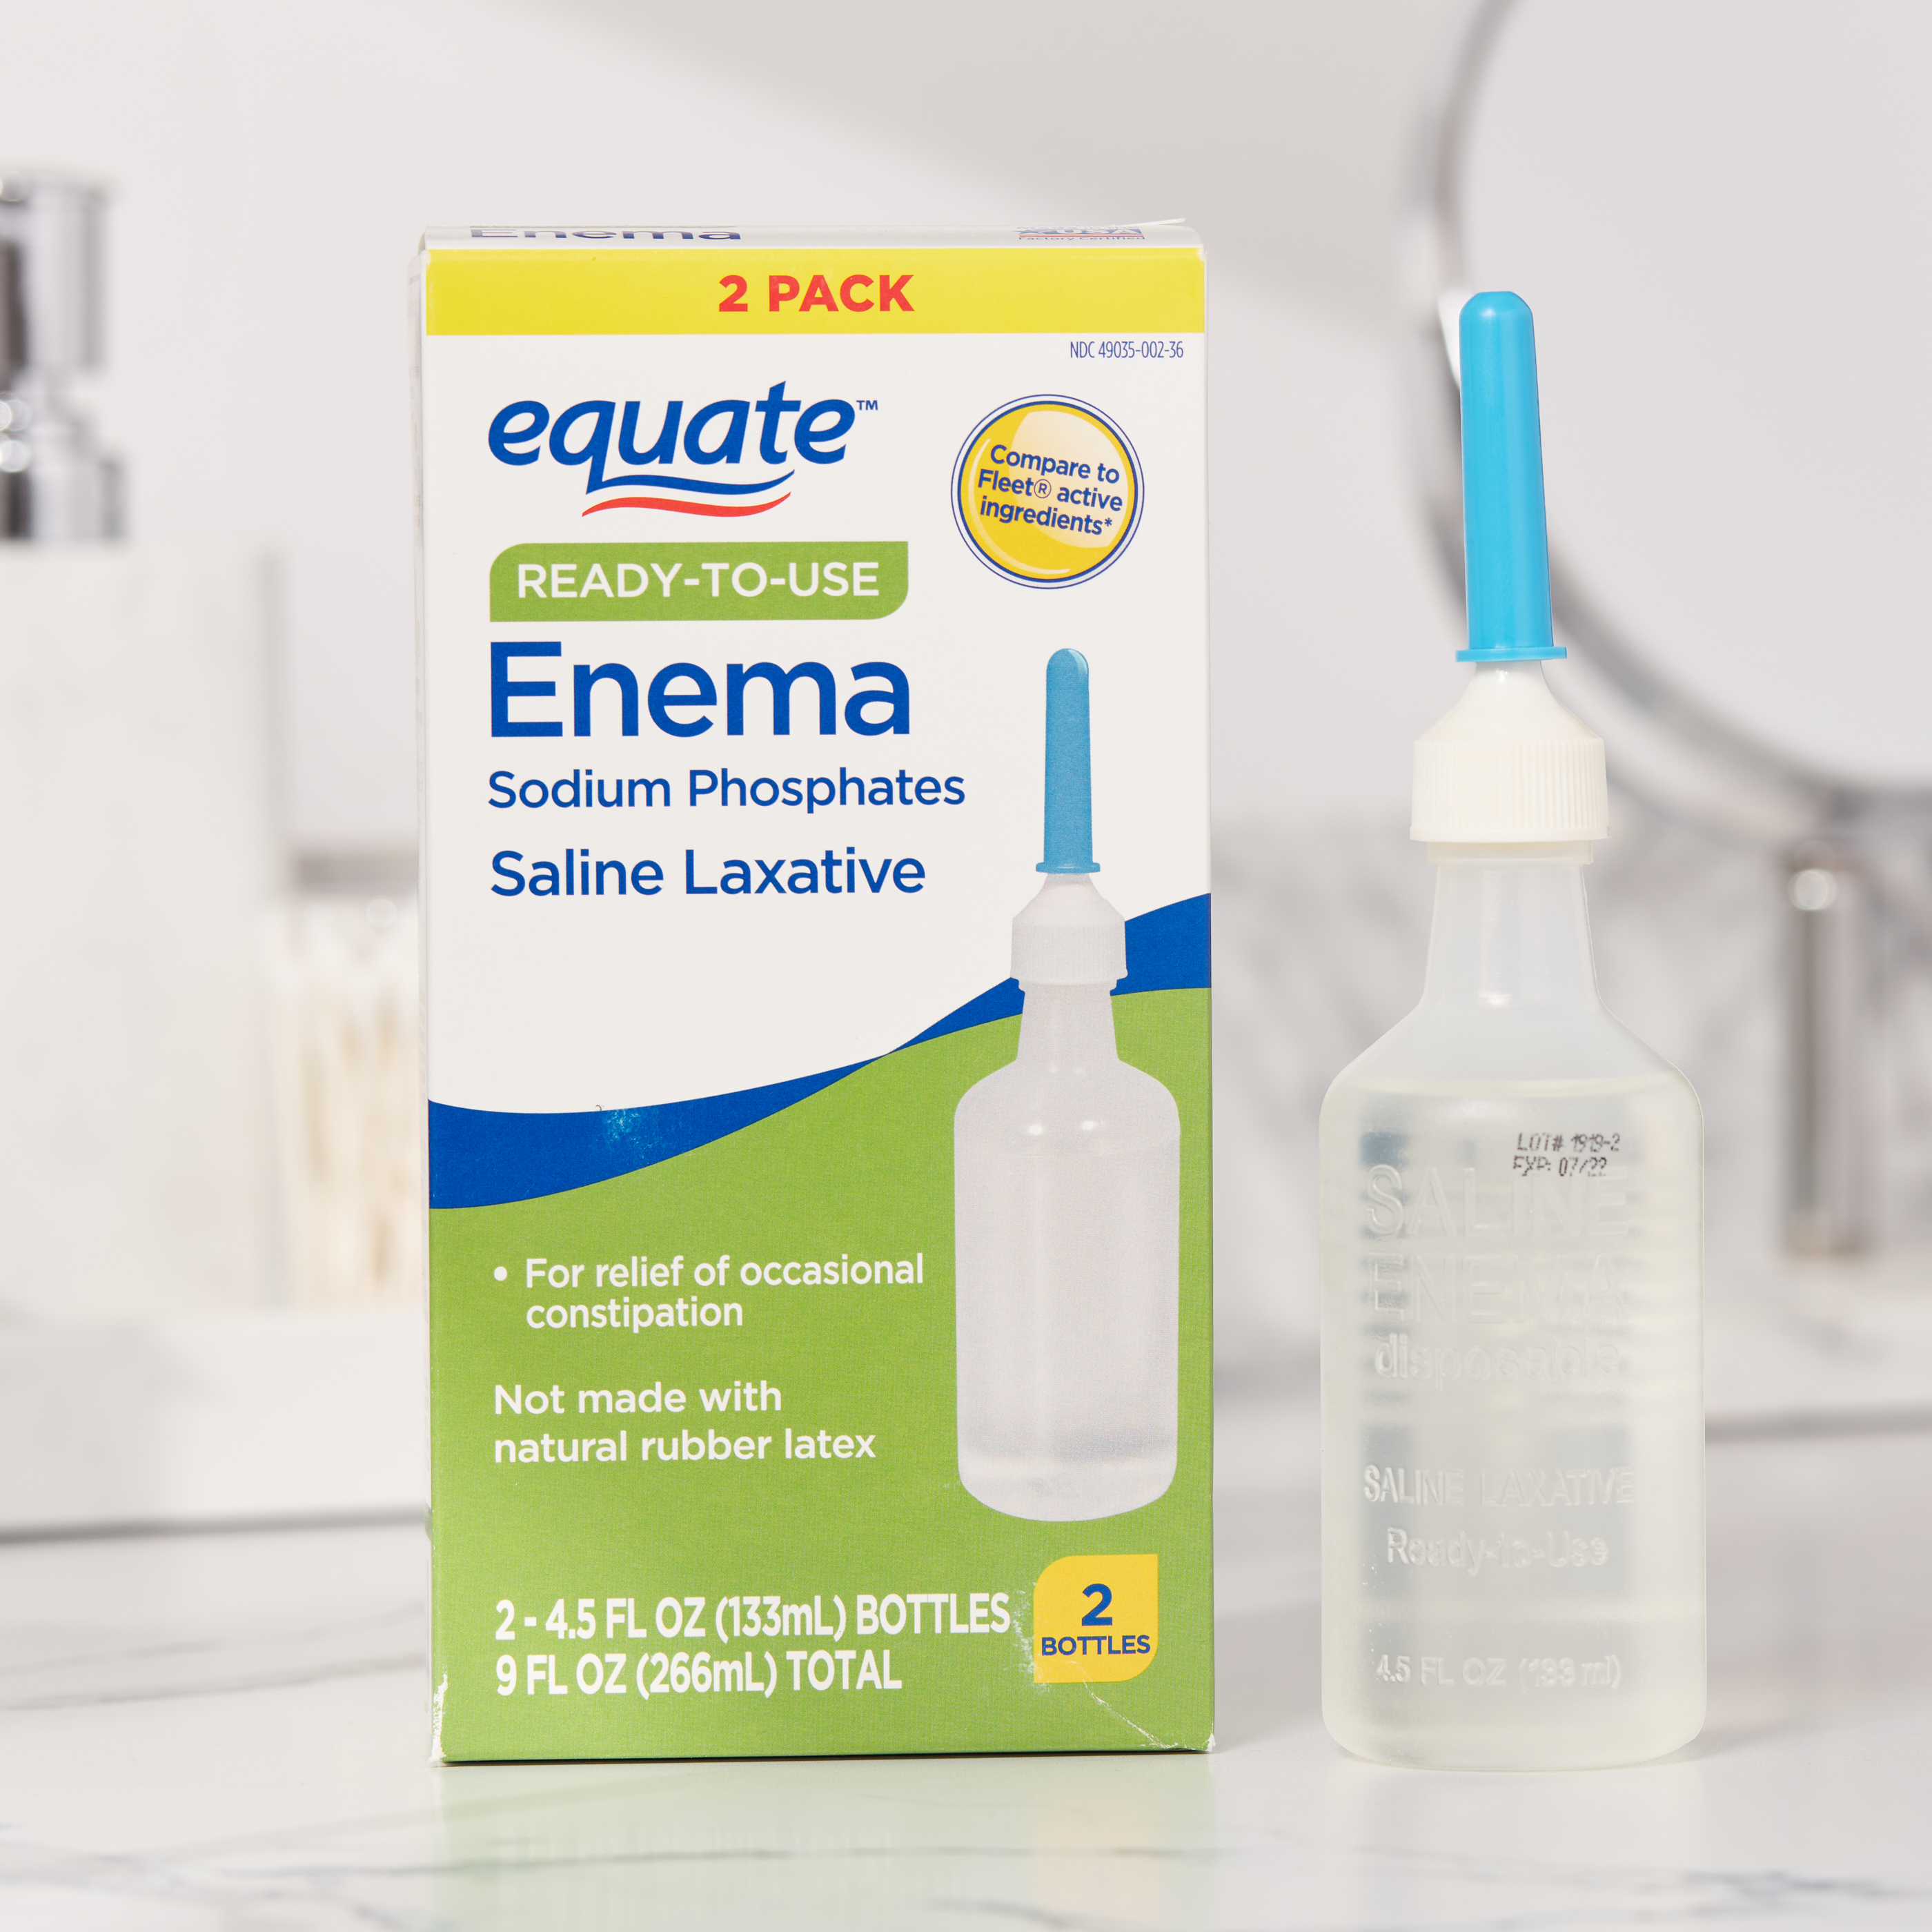 Equate Ready-to-Use Enema Sodium Phosphates Saline Laxative, 9 fl oz, 2 Pack - image 2 of 9